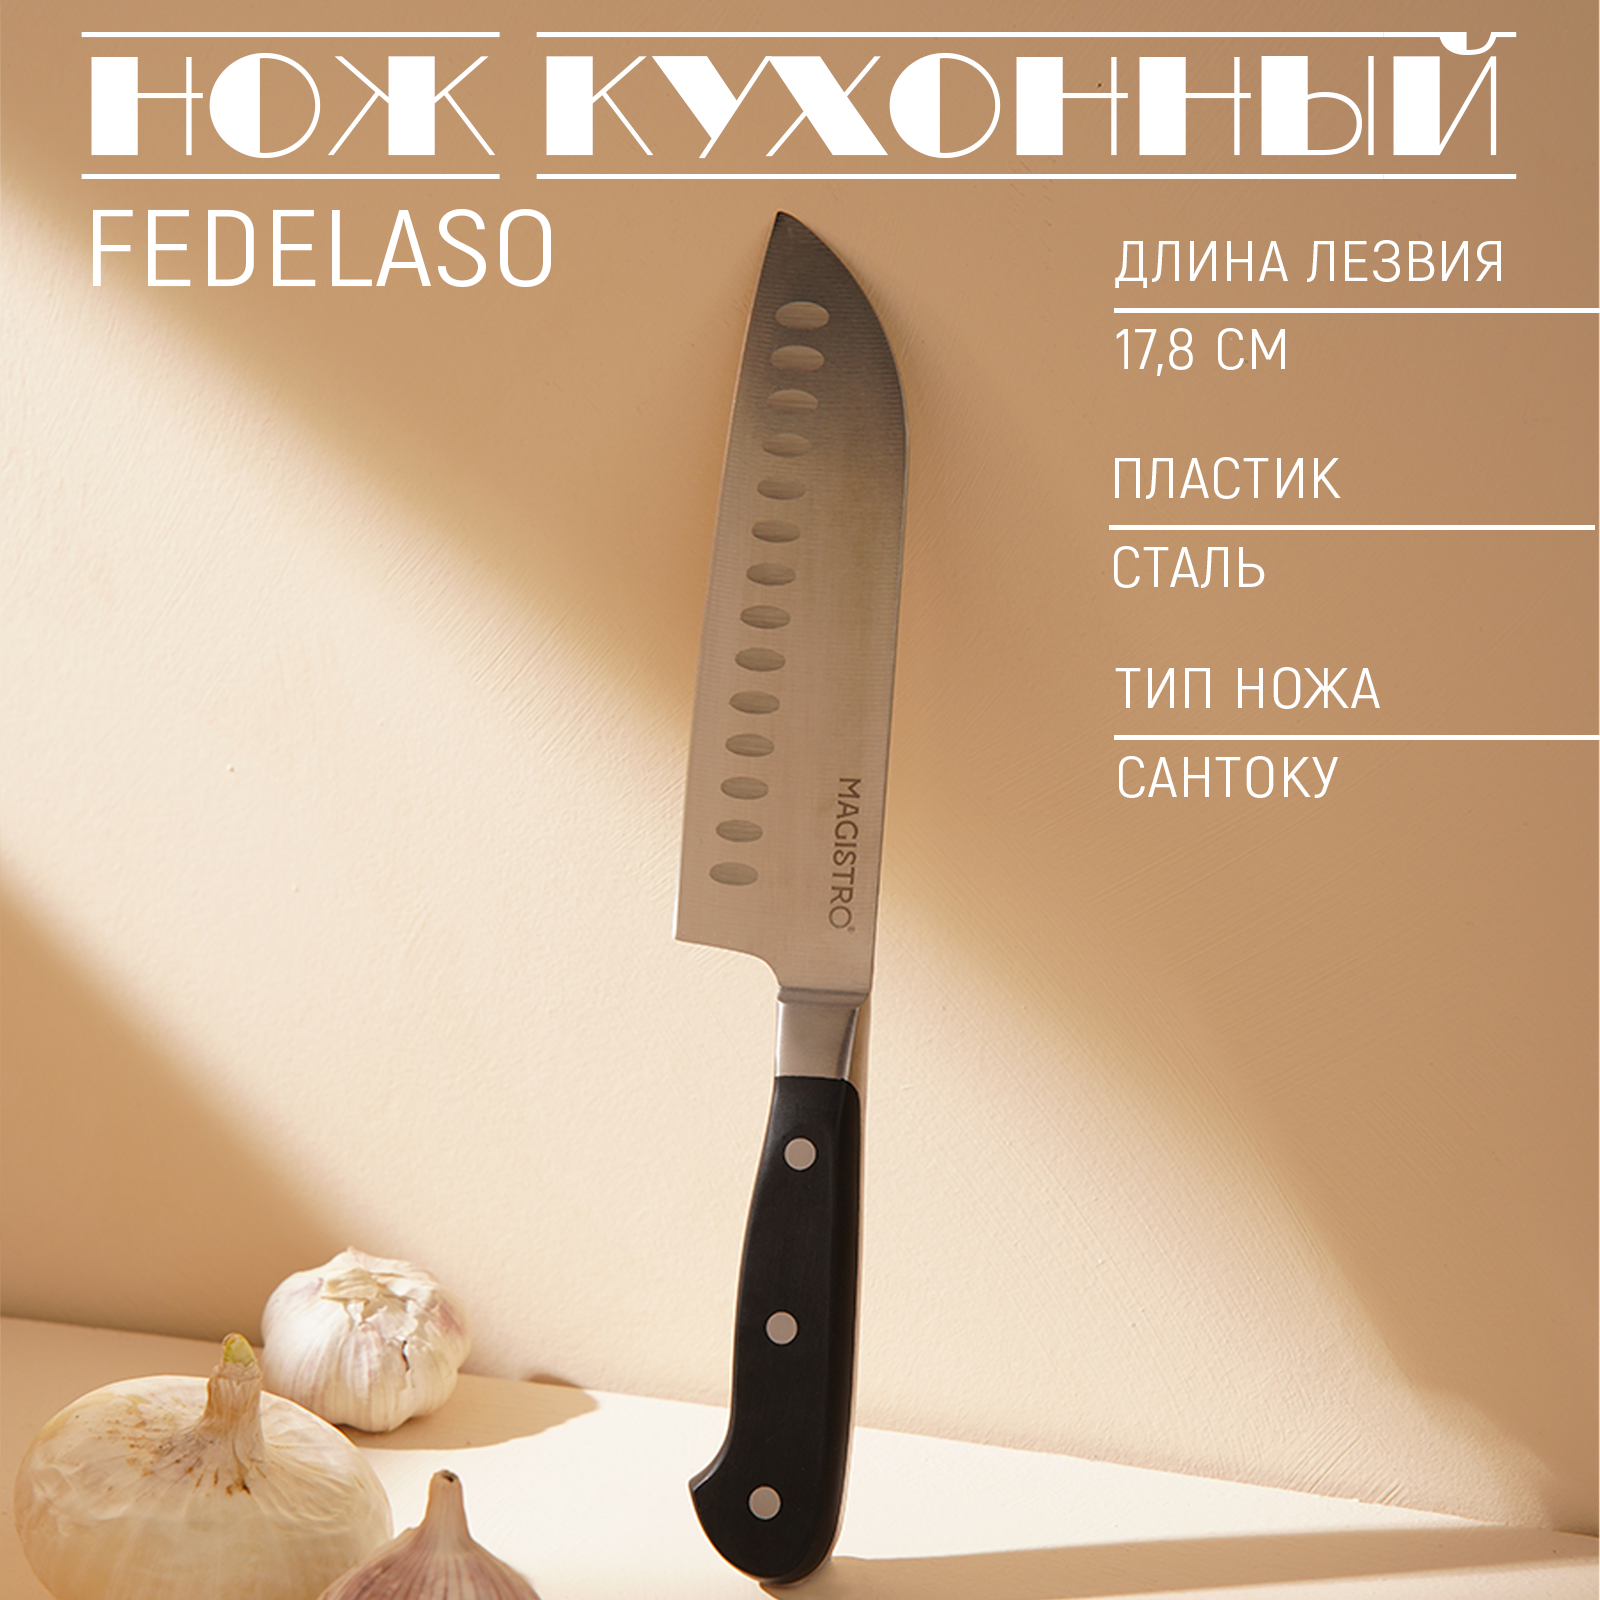 Нож кухонный Magistro Fedelaso сантоку, длина лезвия 17,8 см, цвет чёрный